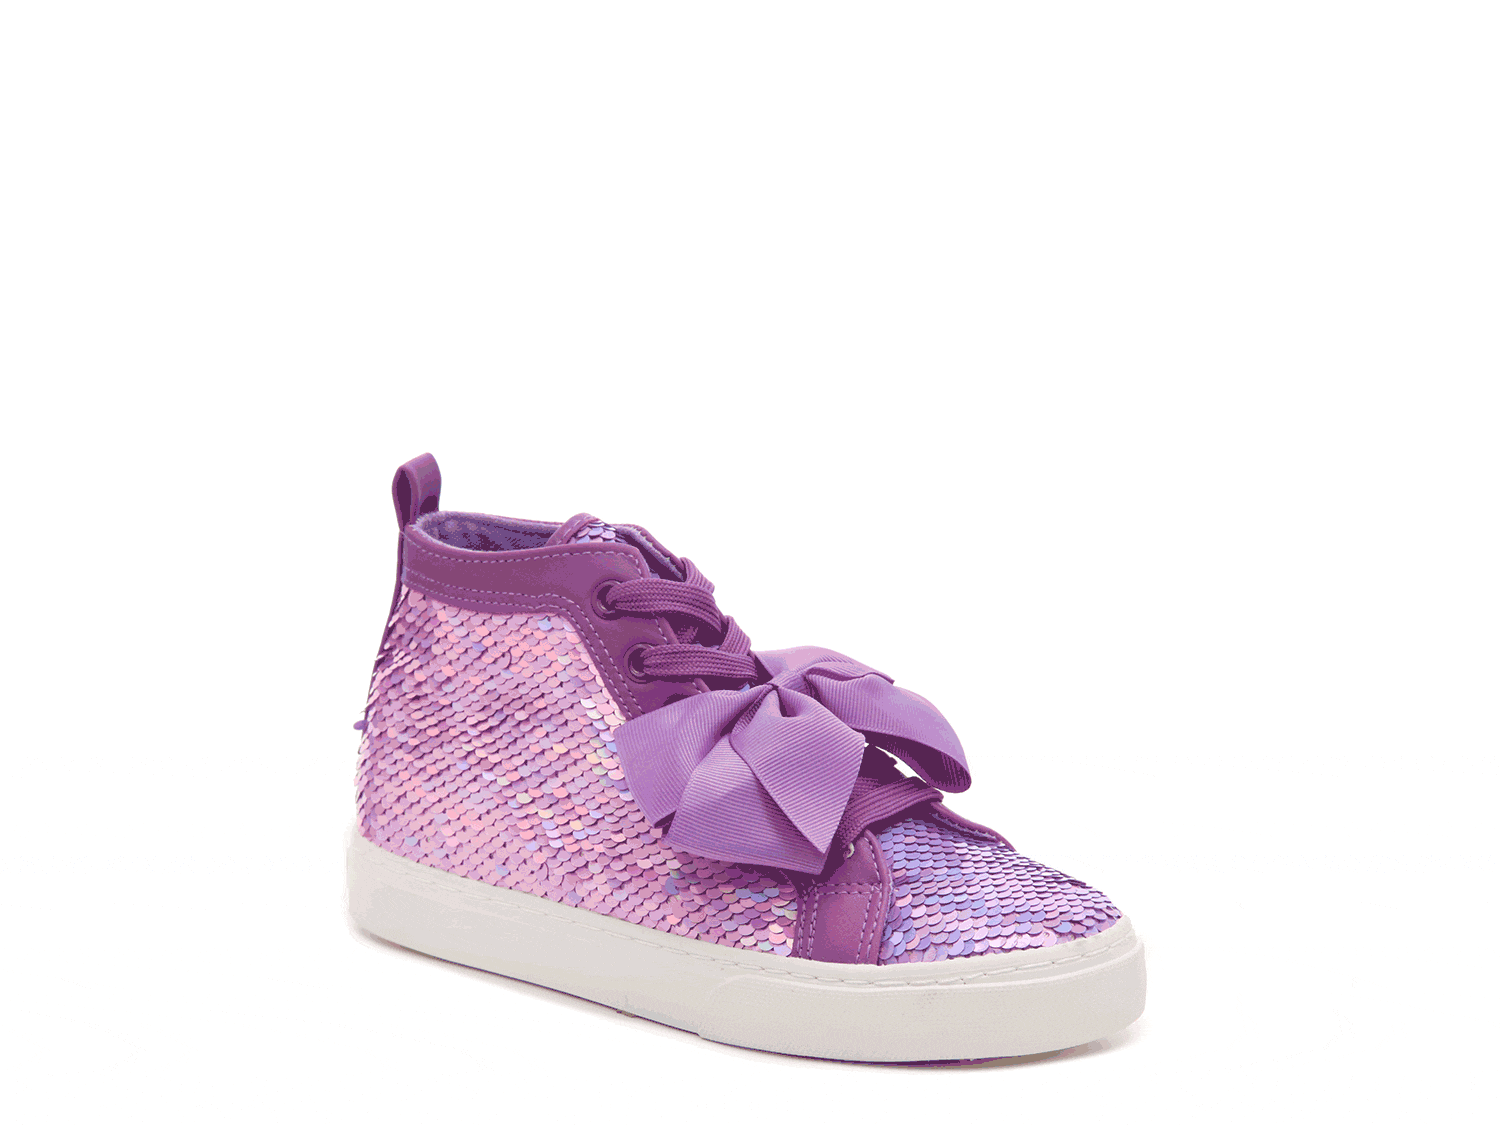 JoJo Siwa Girls High Top Fashion Sneakers, Rose Gold (Toddler